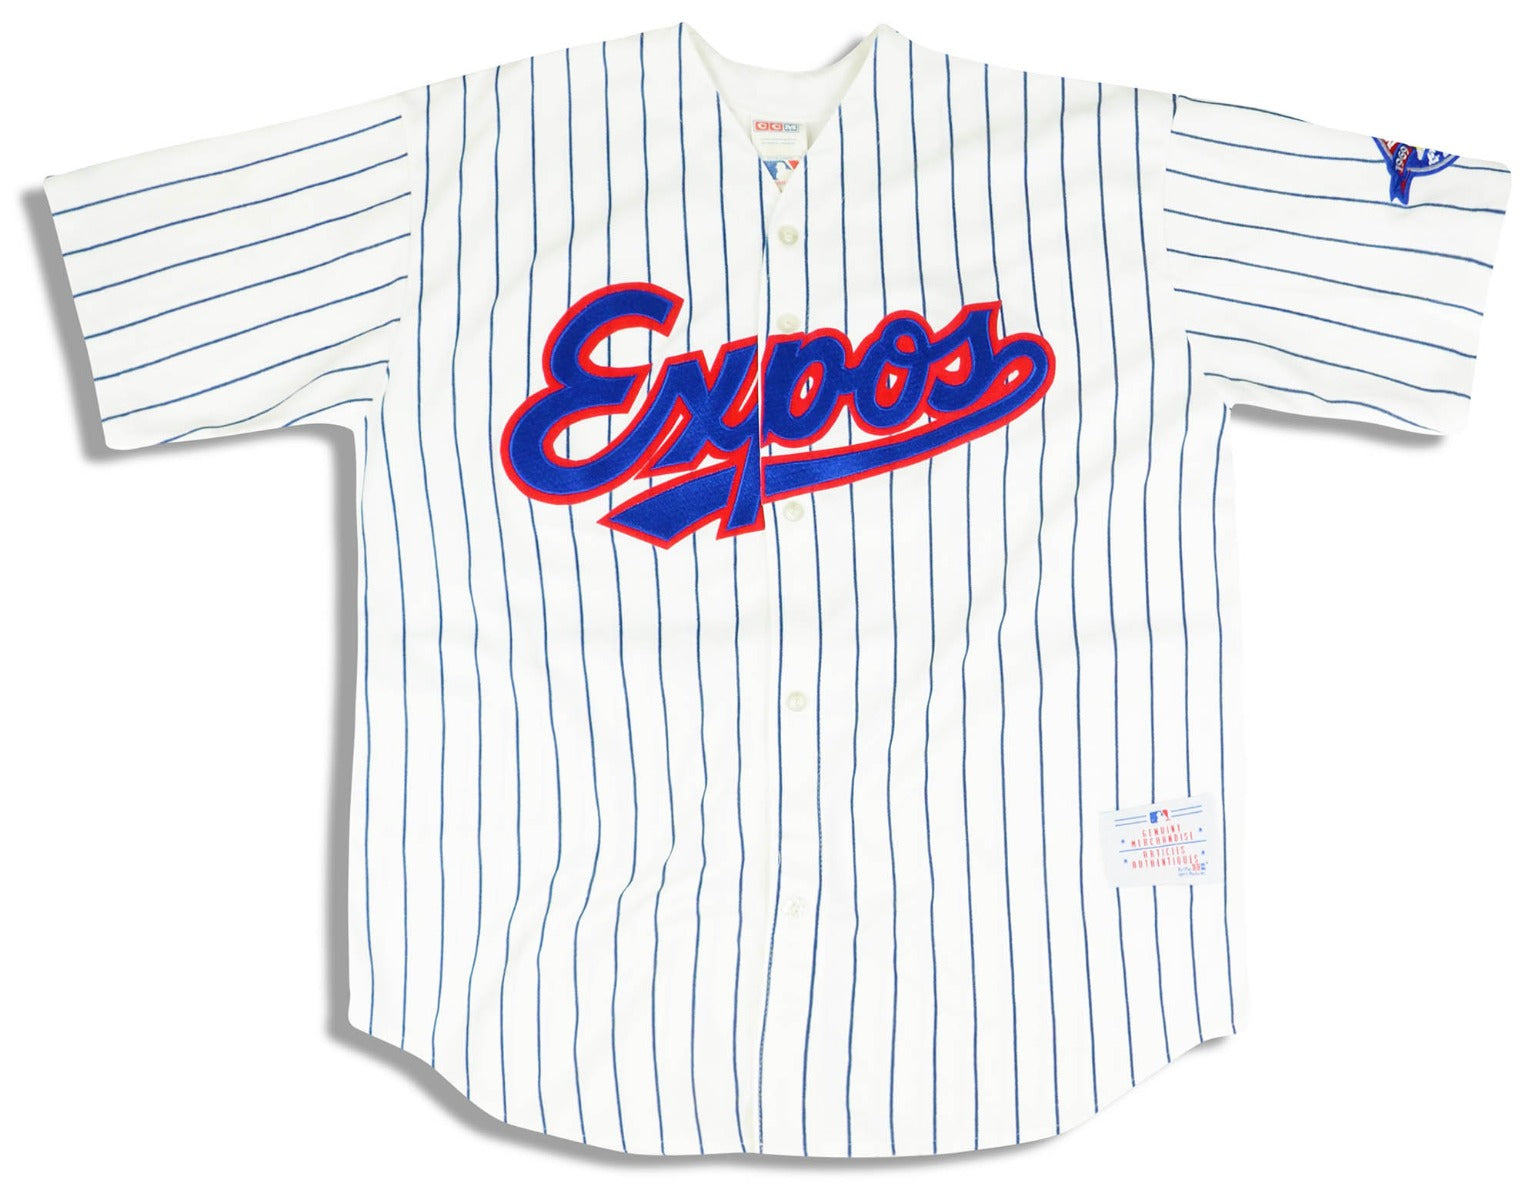 Official Montreal Expos Jerseys, Expos Baseball Jerseys, Uniforms